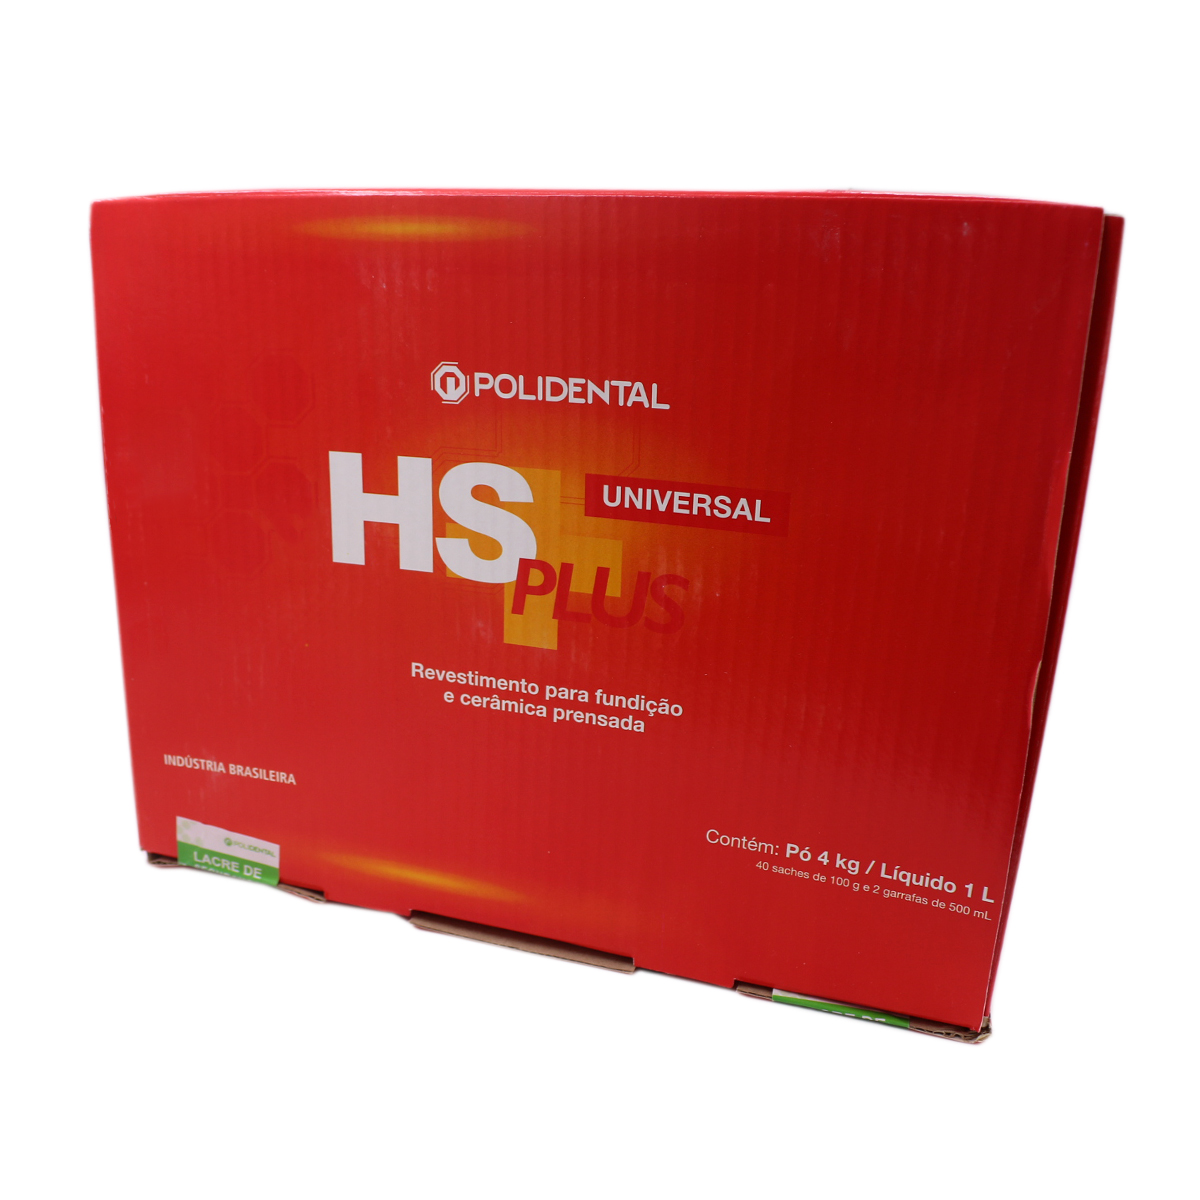 Revestimento Polidental Universal HS PLUS - 40 envelopes de 100g + 2 líquidos de 500L